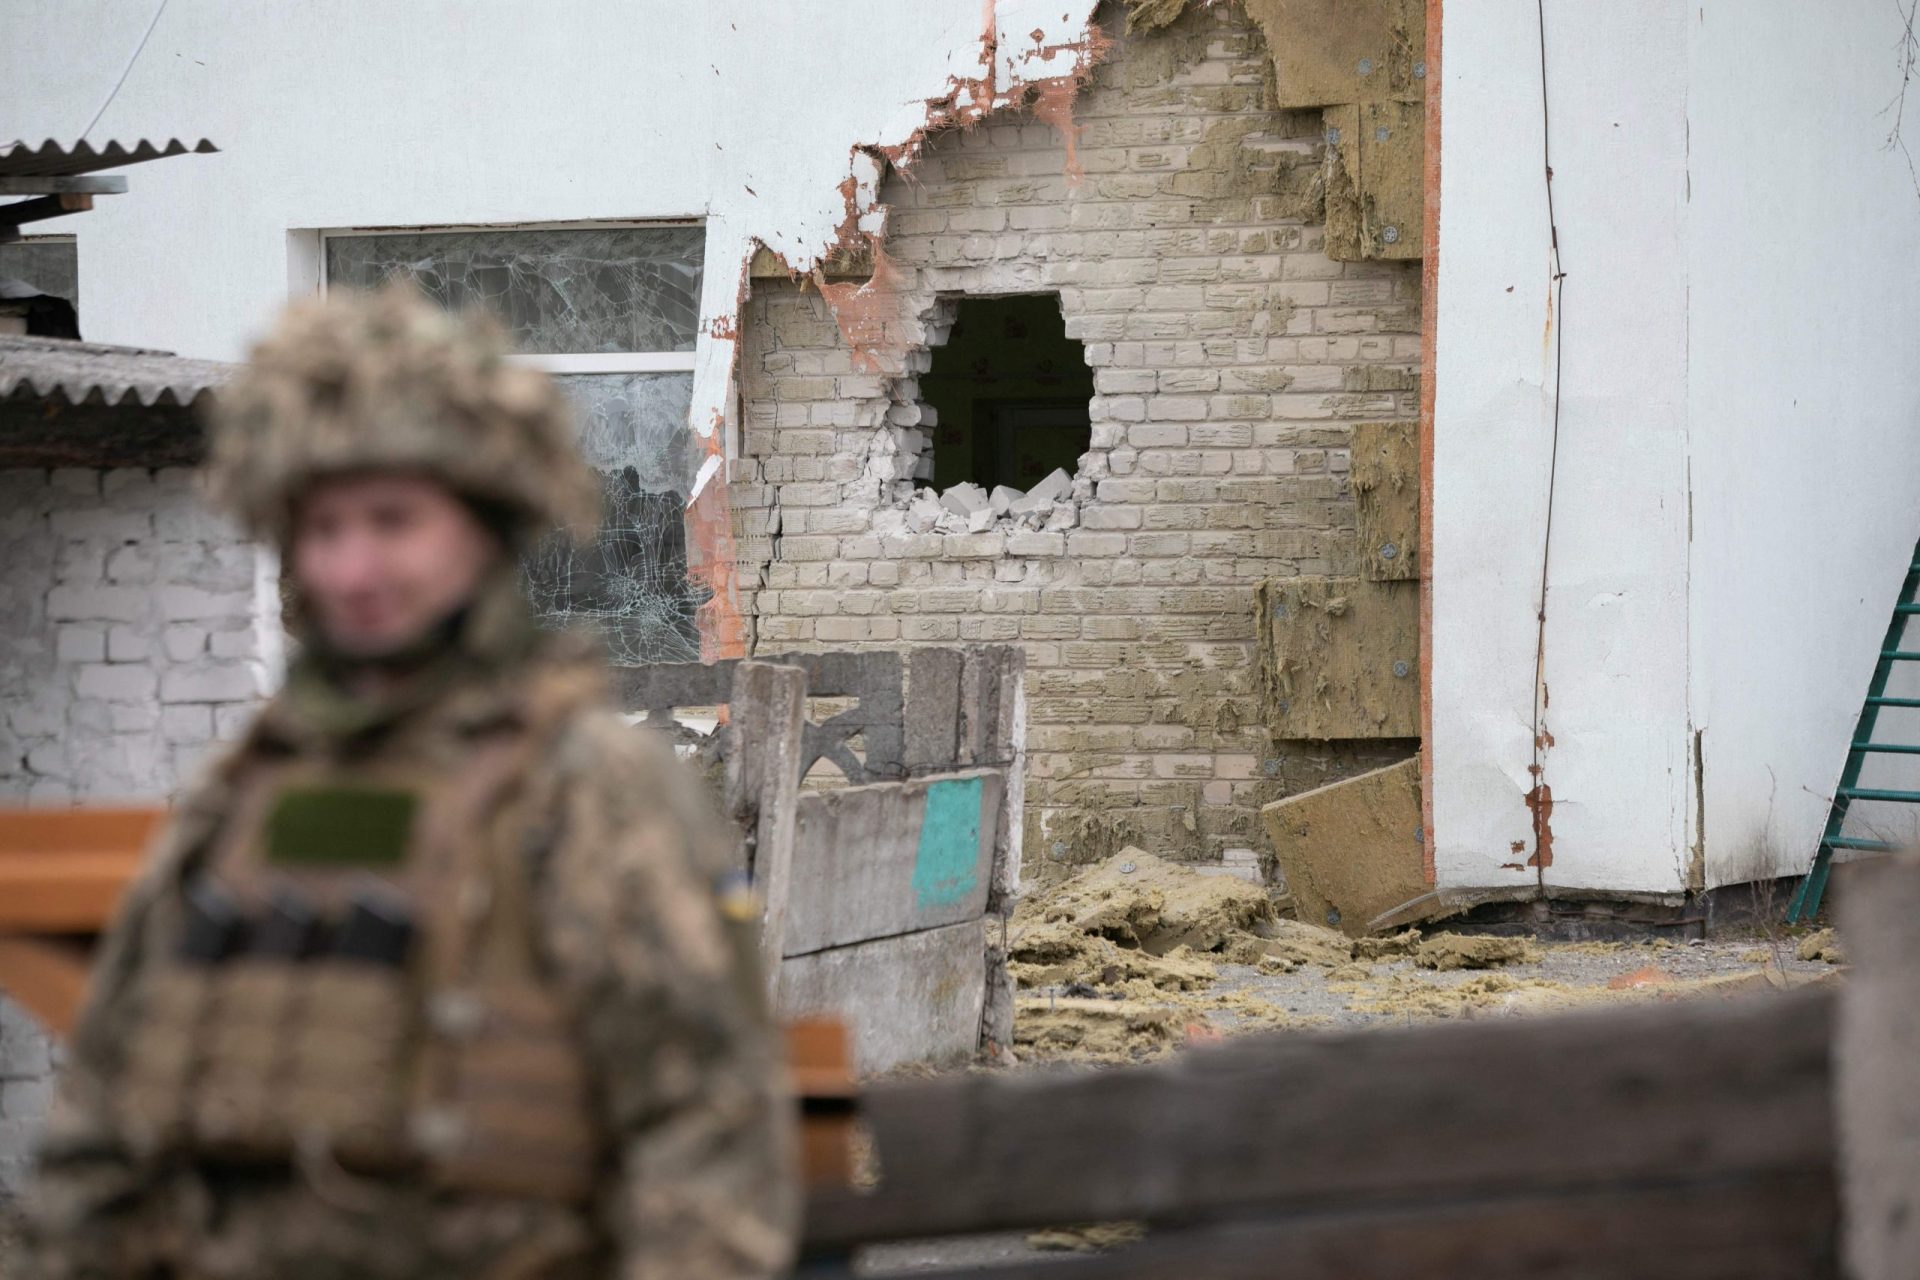 Ministério da Defesa ucraniano regista 60 violações de “cessar-fogo” por parte de separatistas pró-Rússia